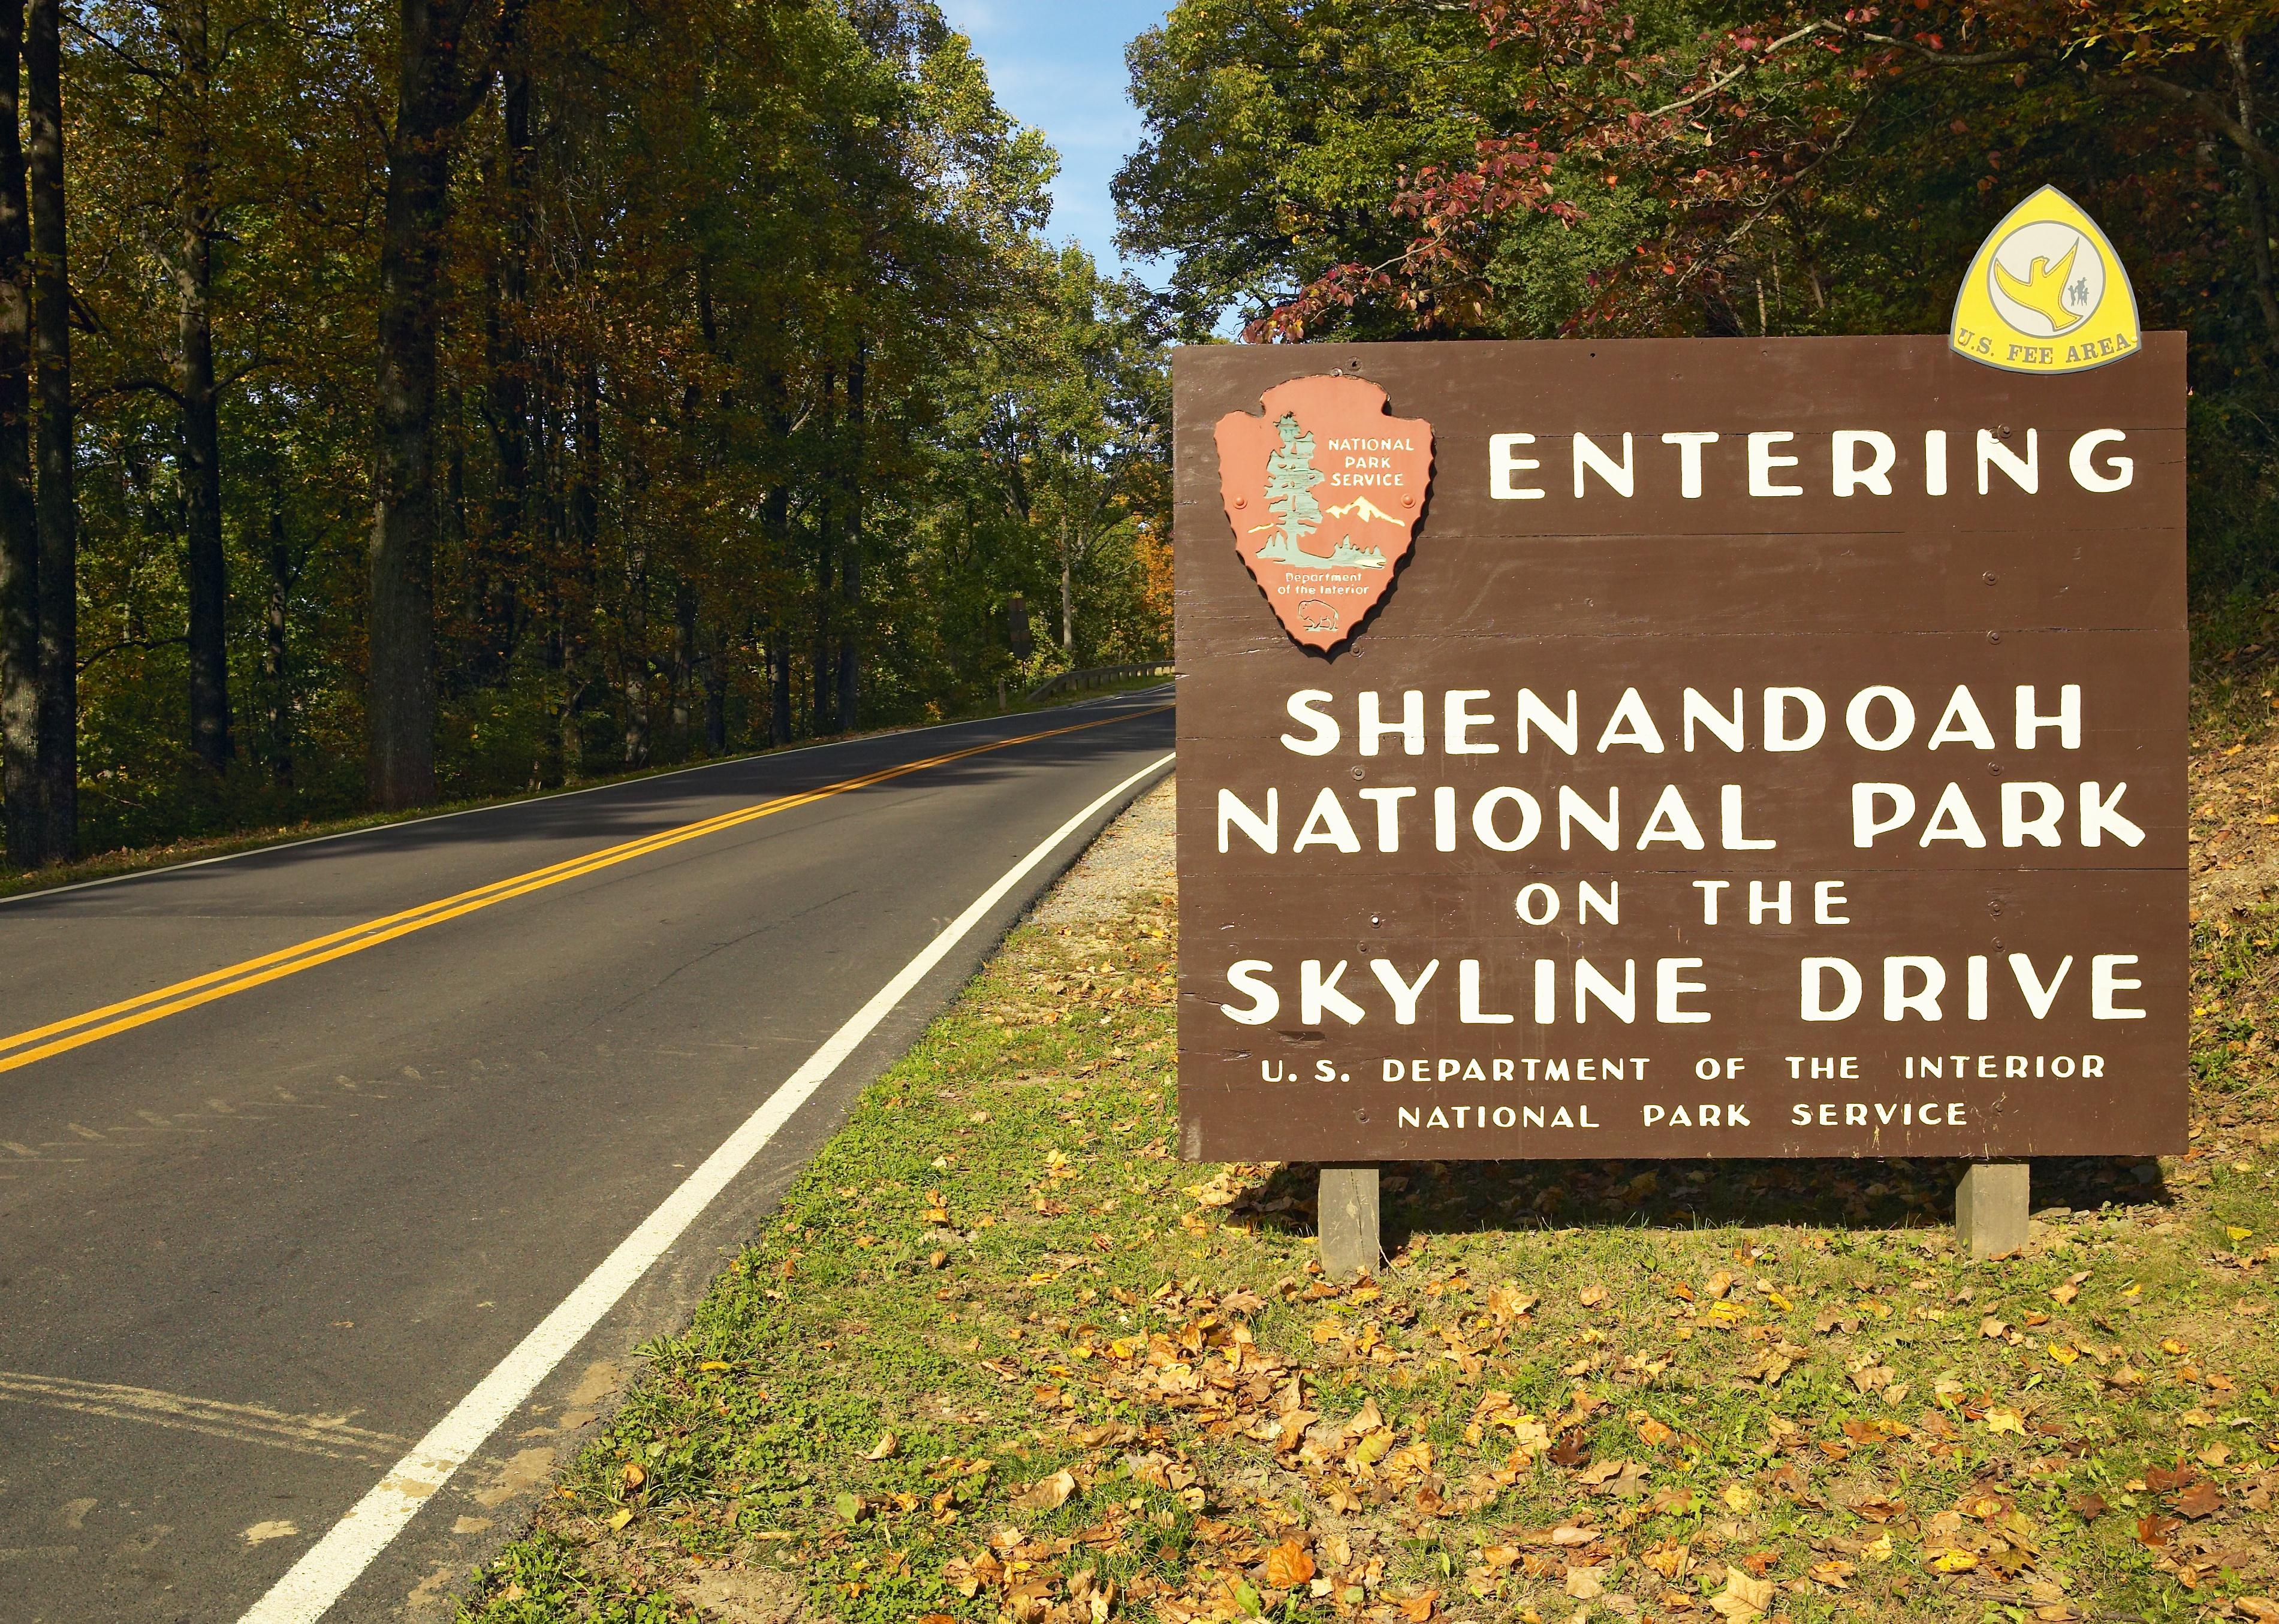 Sign for entering Shenandoah National Park in Virginia.